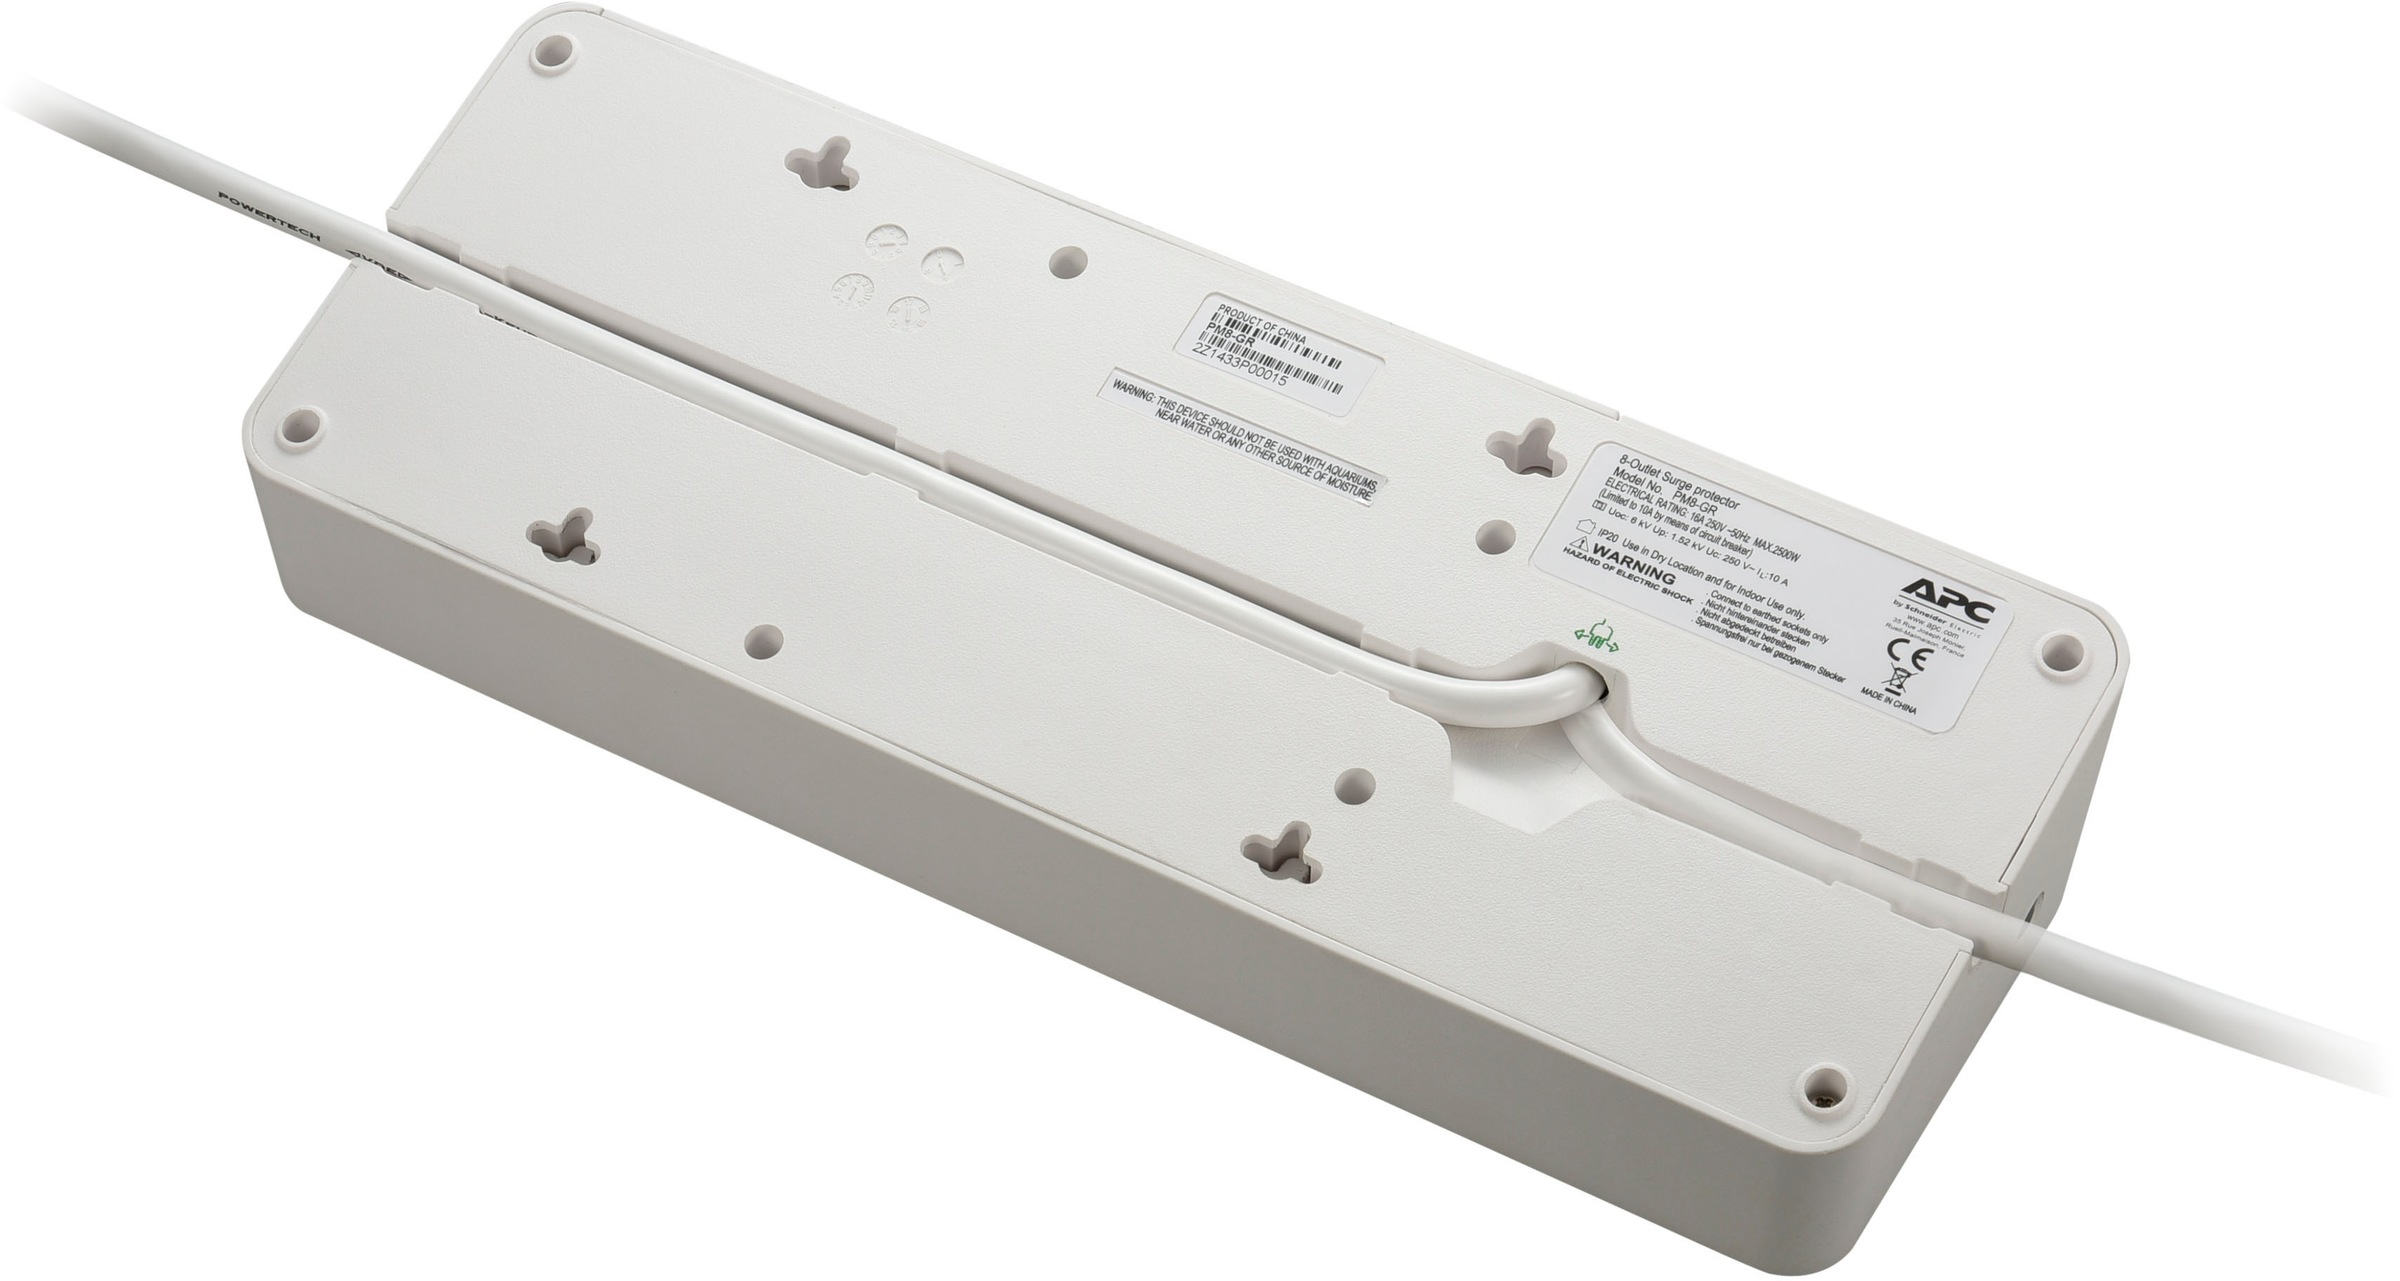 APC Steckdosenleiste »SurgeArrest Essential«, 8-fach, (Ein- / Ausschalter-LED-Statusanzeige-USB-Anschlüsse Kabellänge 2 m)